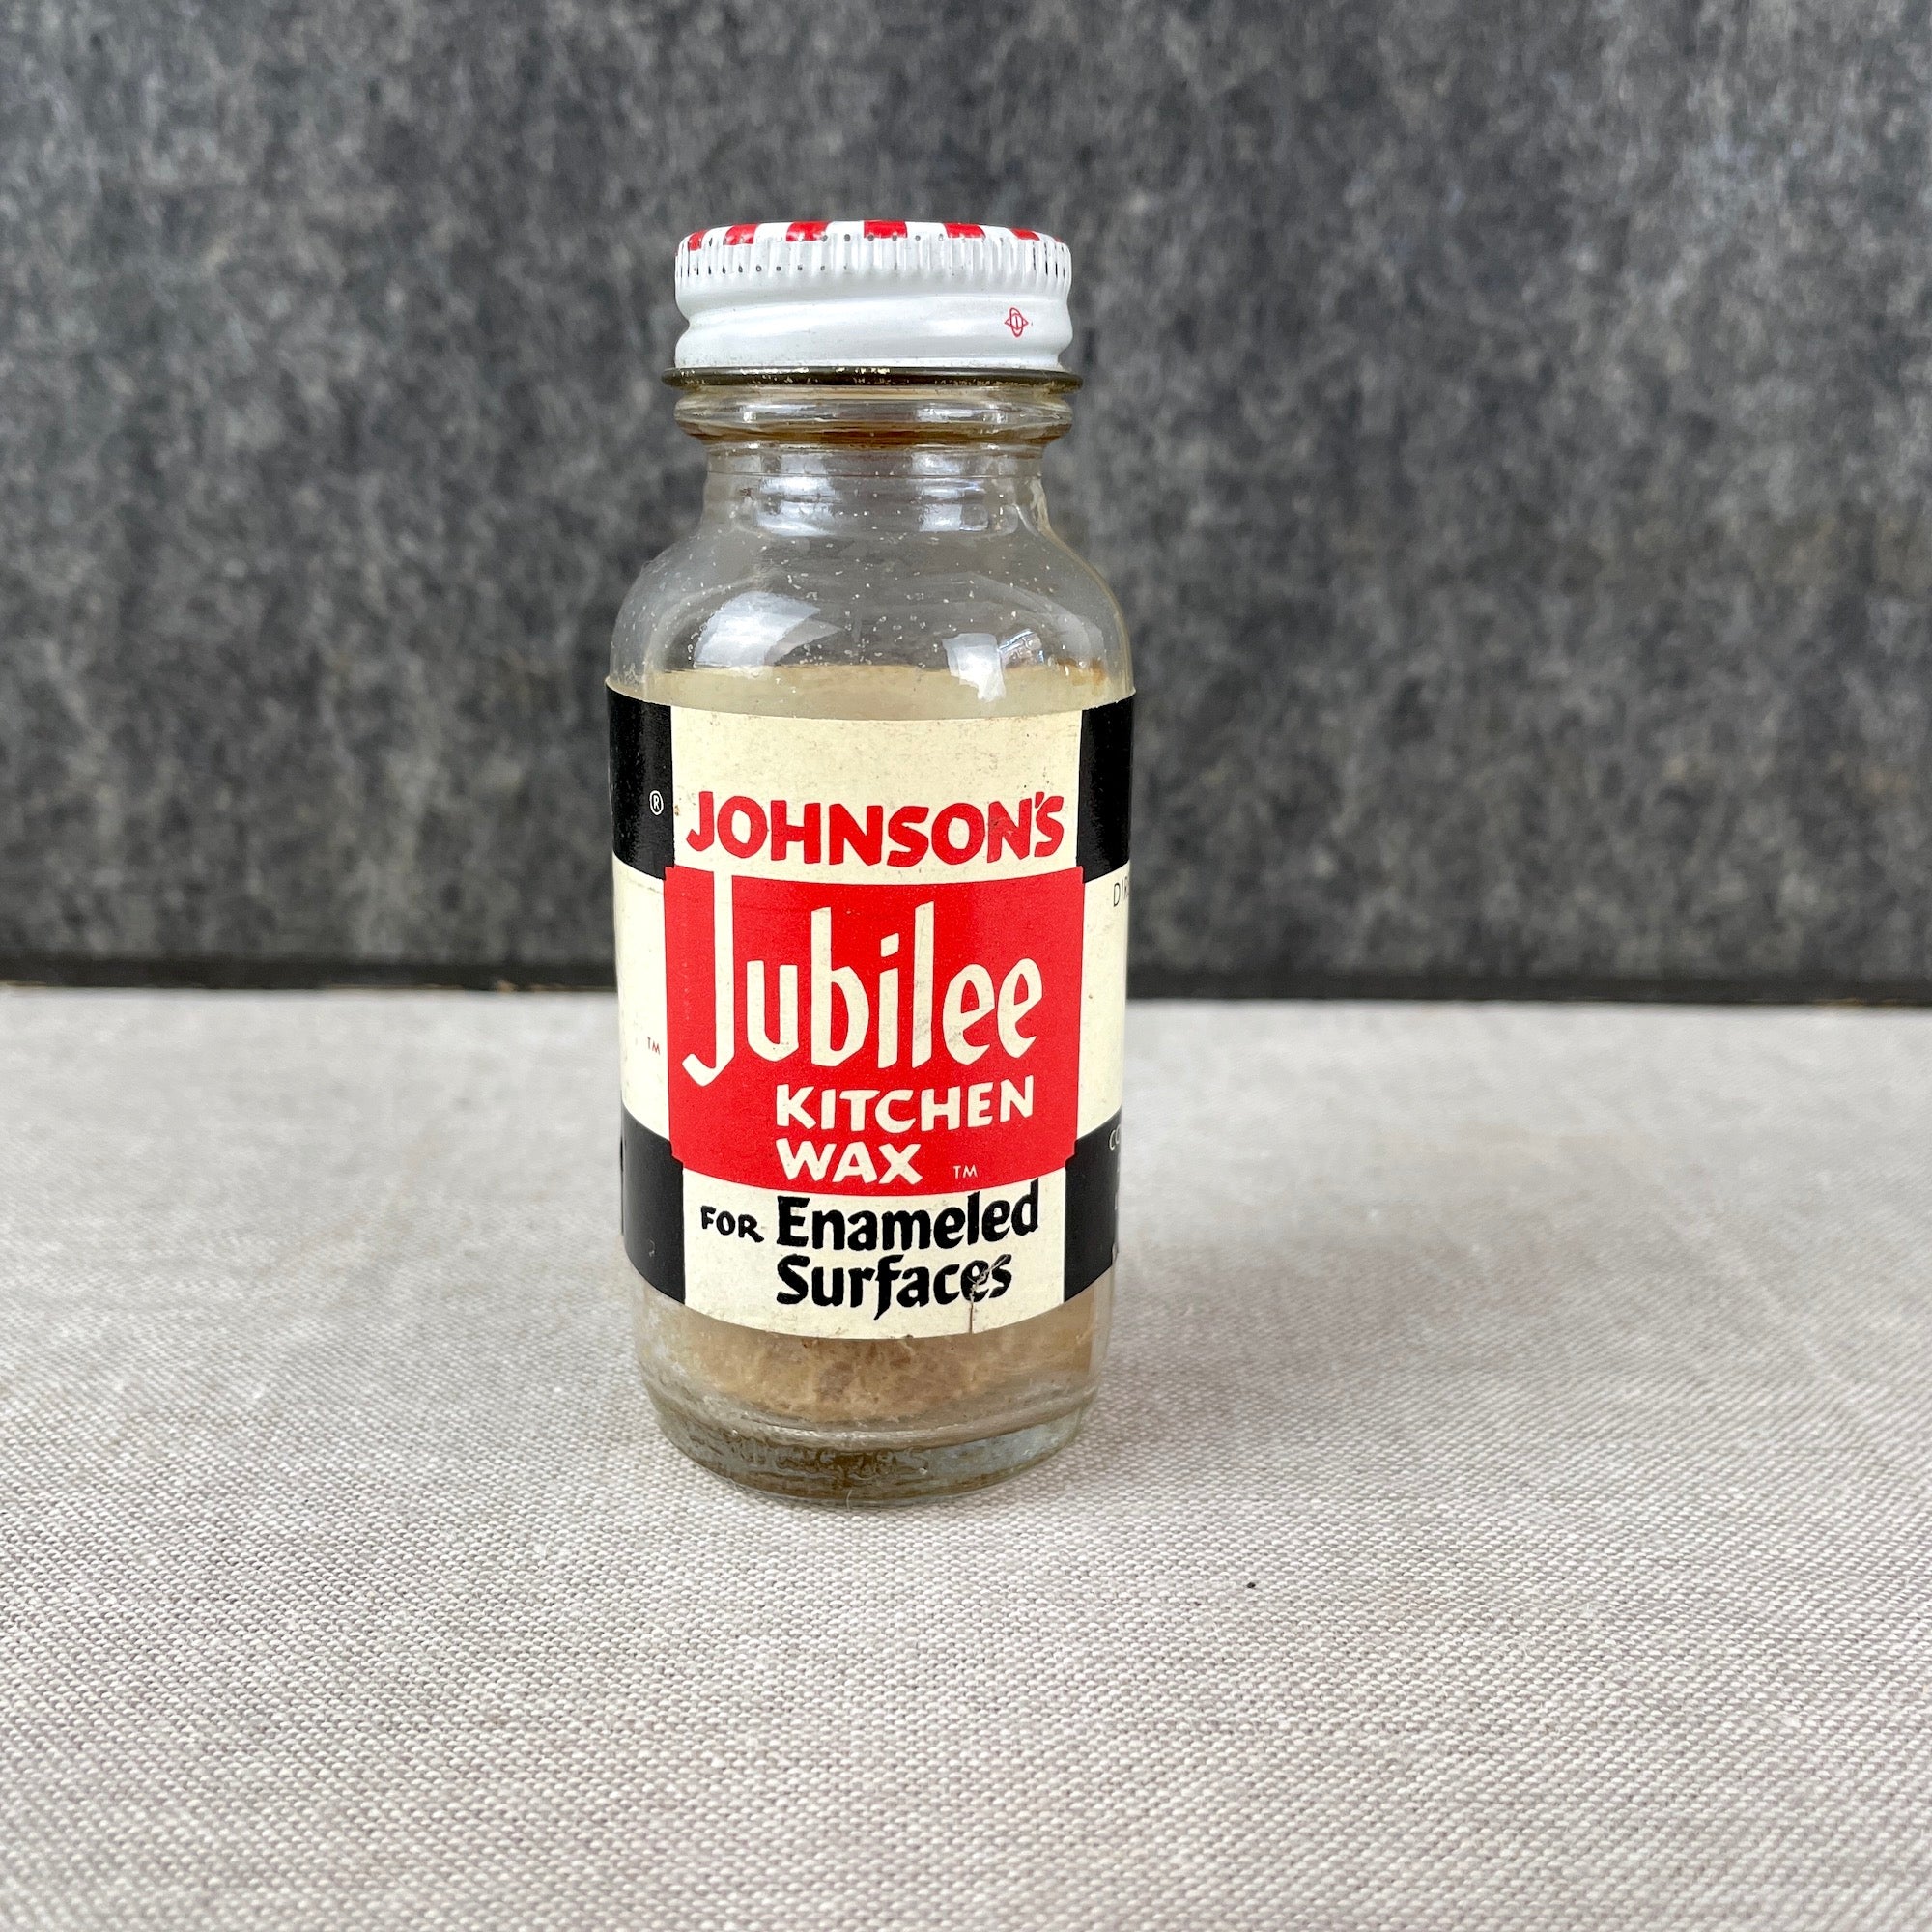  Jubilee Kitchen Wax, 15 Fluid Ounce